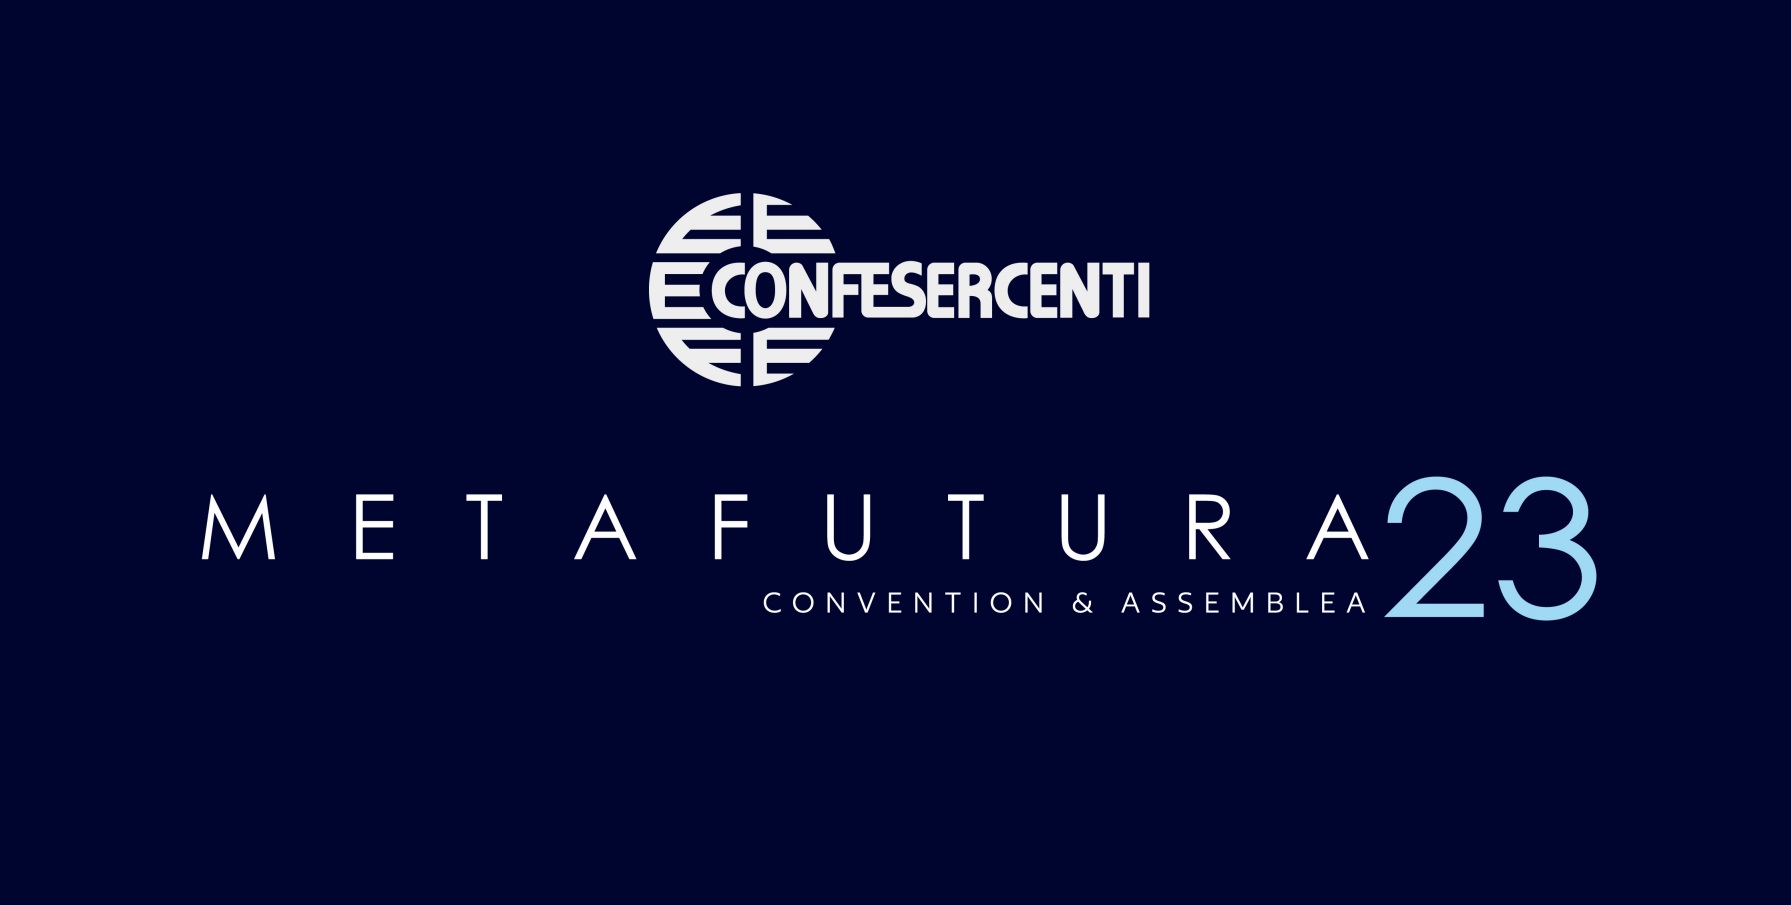 Metafutura: giovedì 7 dicembre a Venezia l’Assemblea 2023 di Confesercenti